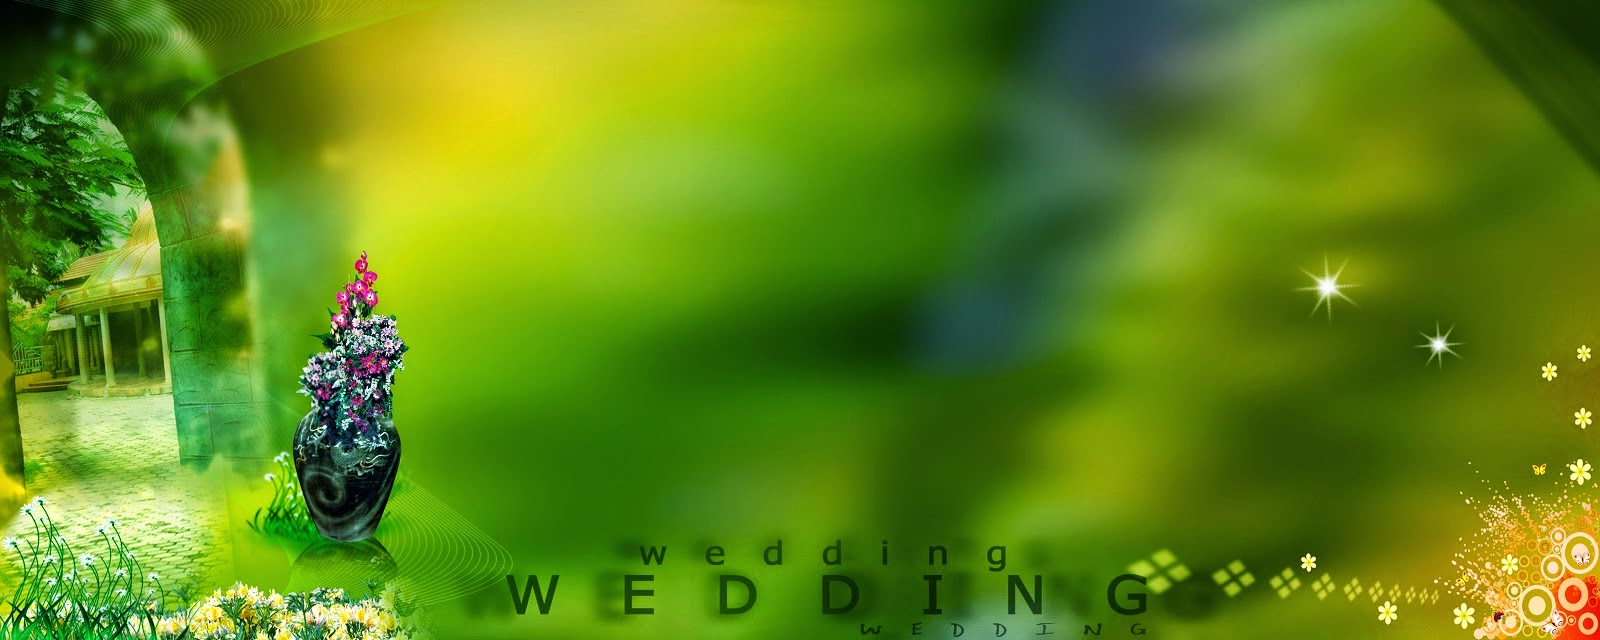 10 Beautiful Karizma Album Background | Wedding photography album design,  Photo album design, Wedding album layout